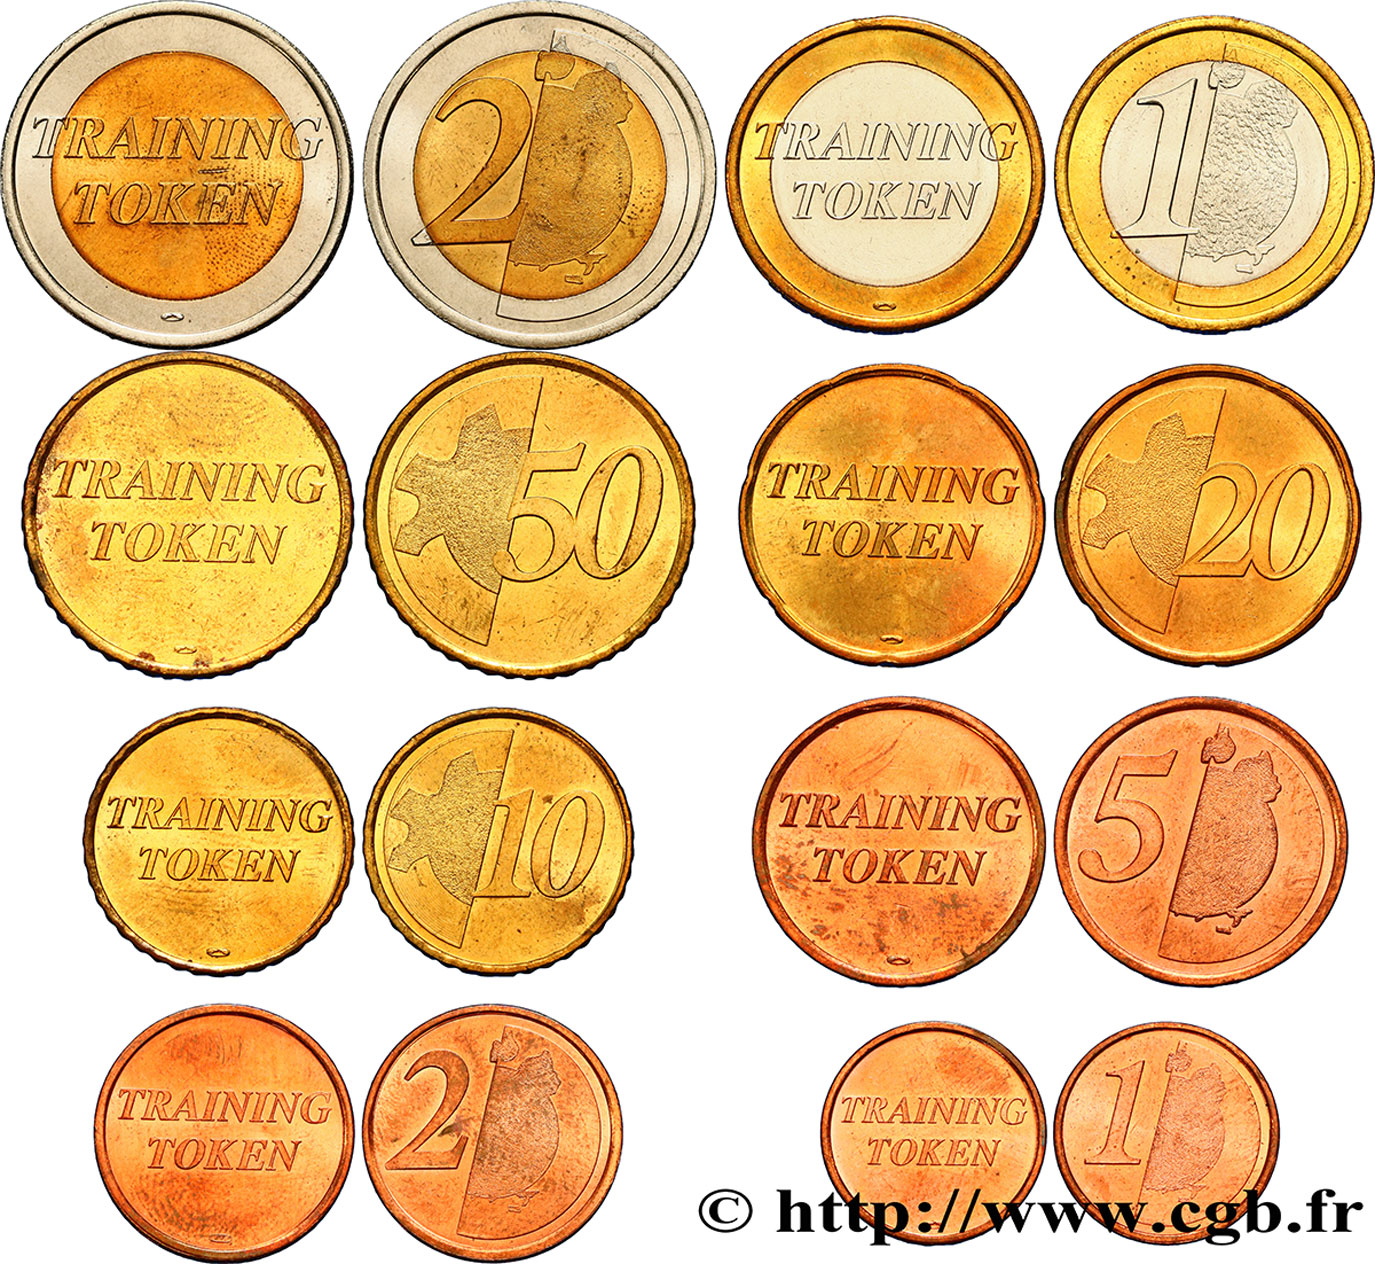 EUROPEAN CENTRAL BANK Série complète Training tokens - 1 cent à 2 Euro n.d. MS